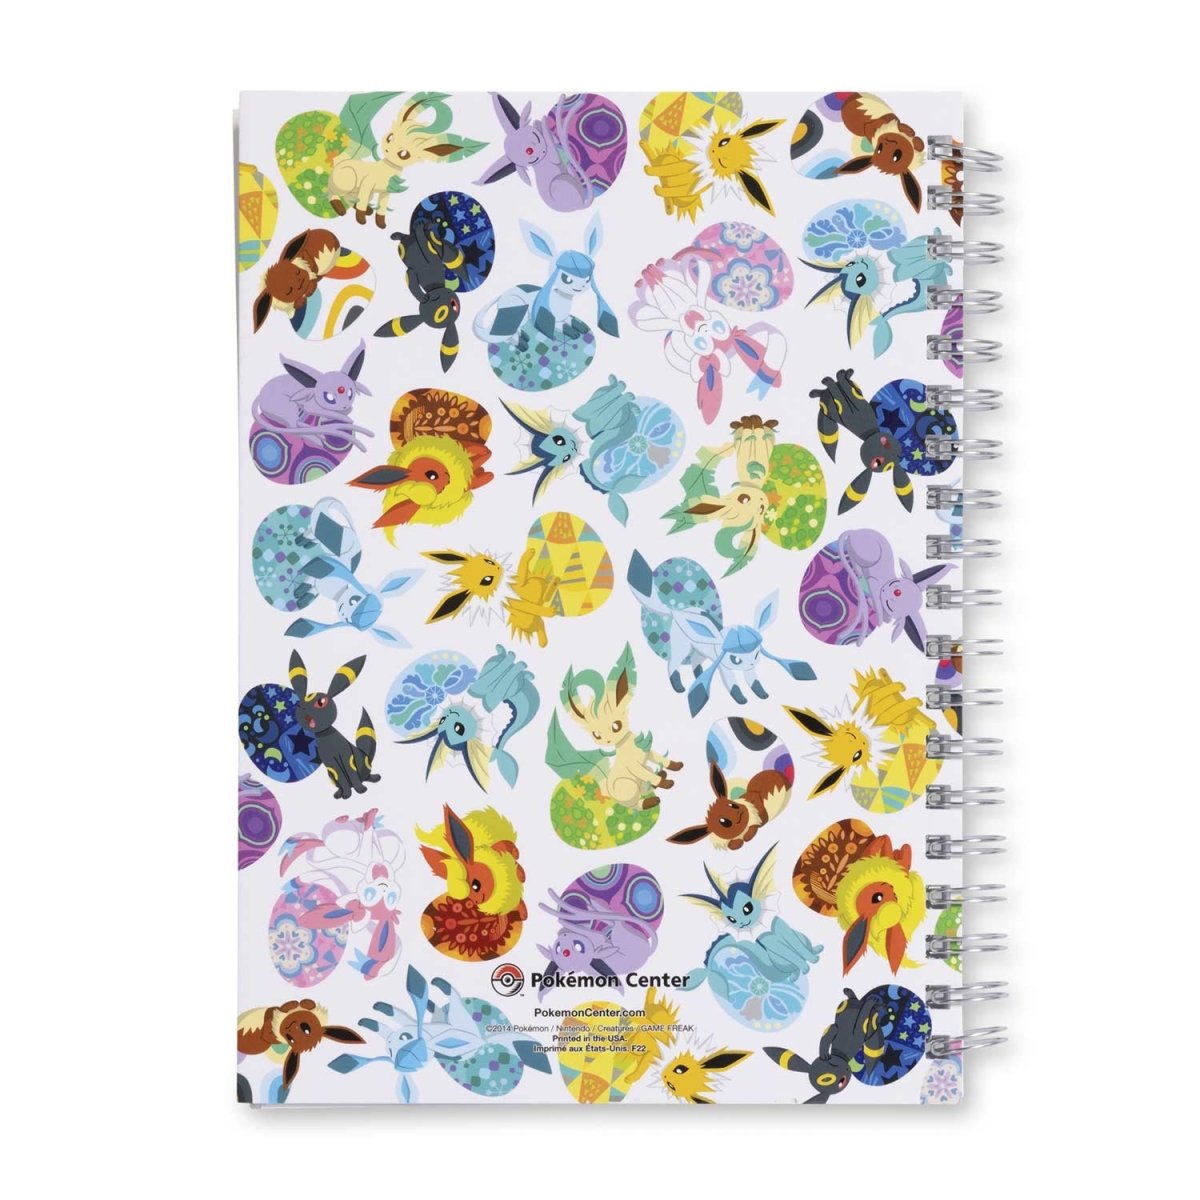 Eevee Spiral Bound Notebook Journal Diary Pokemon Eevee Cute Notebook